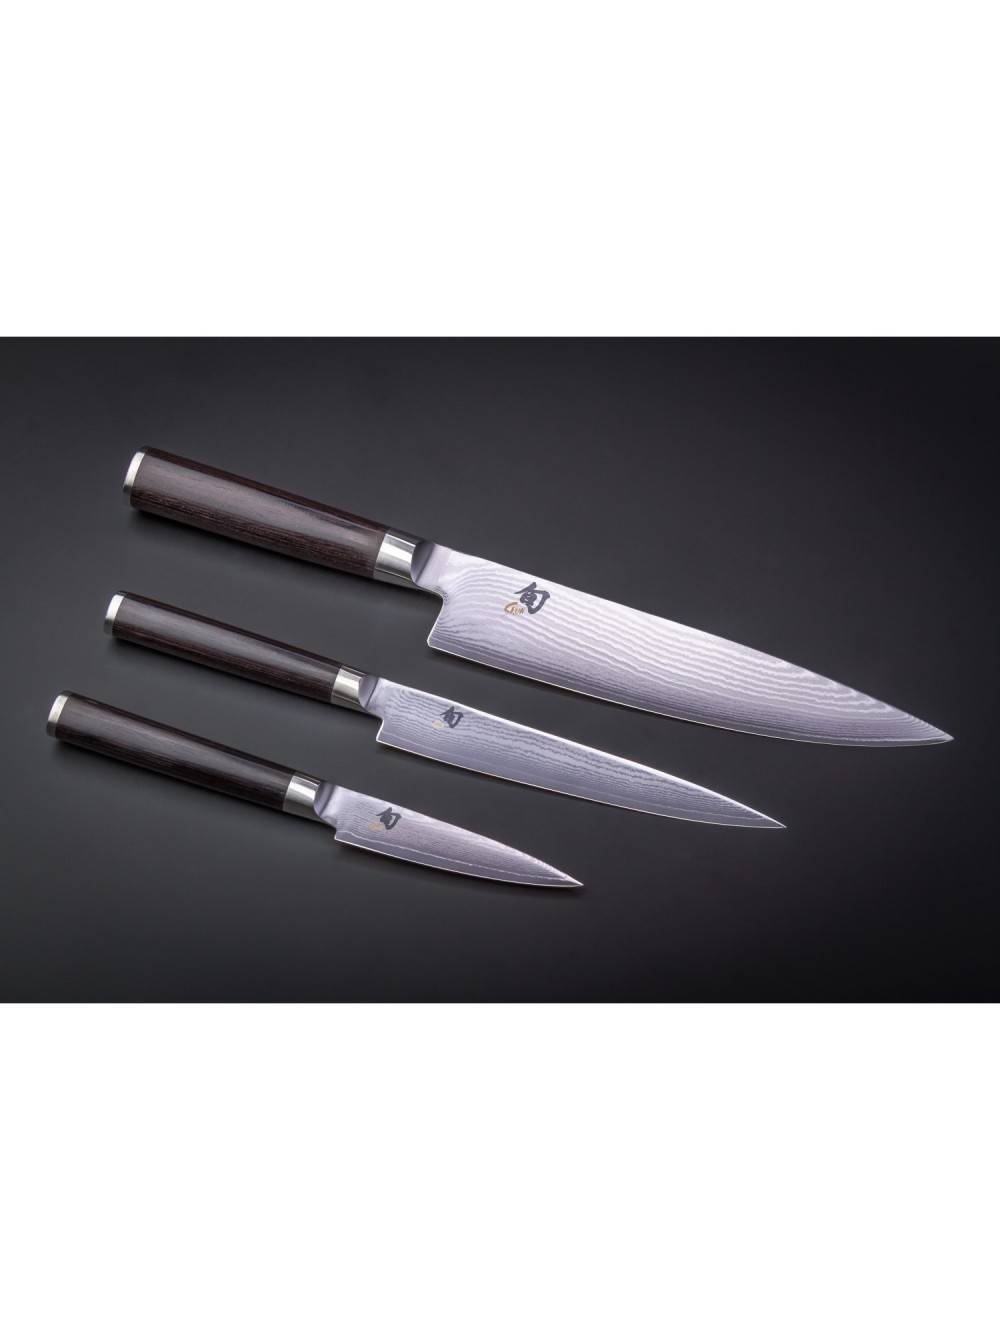 Ножи самура (samura): японские для кухни, набор